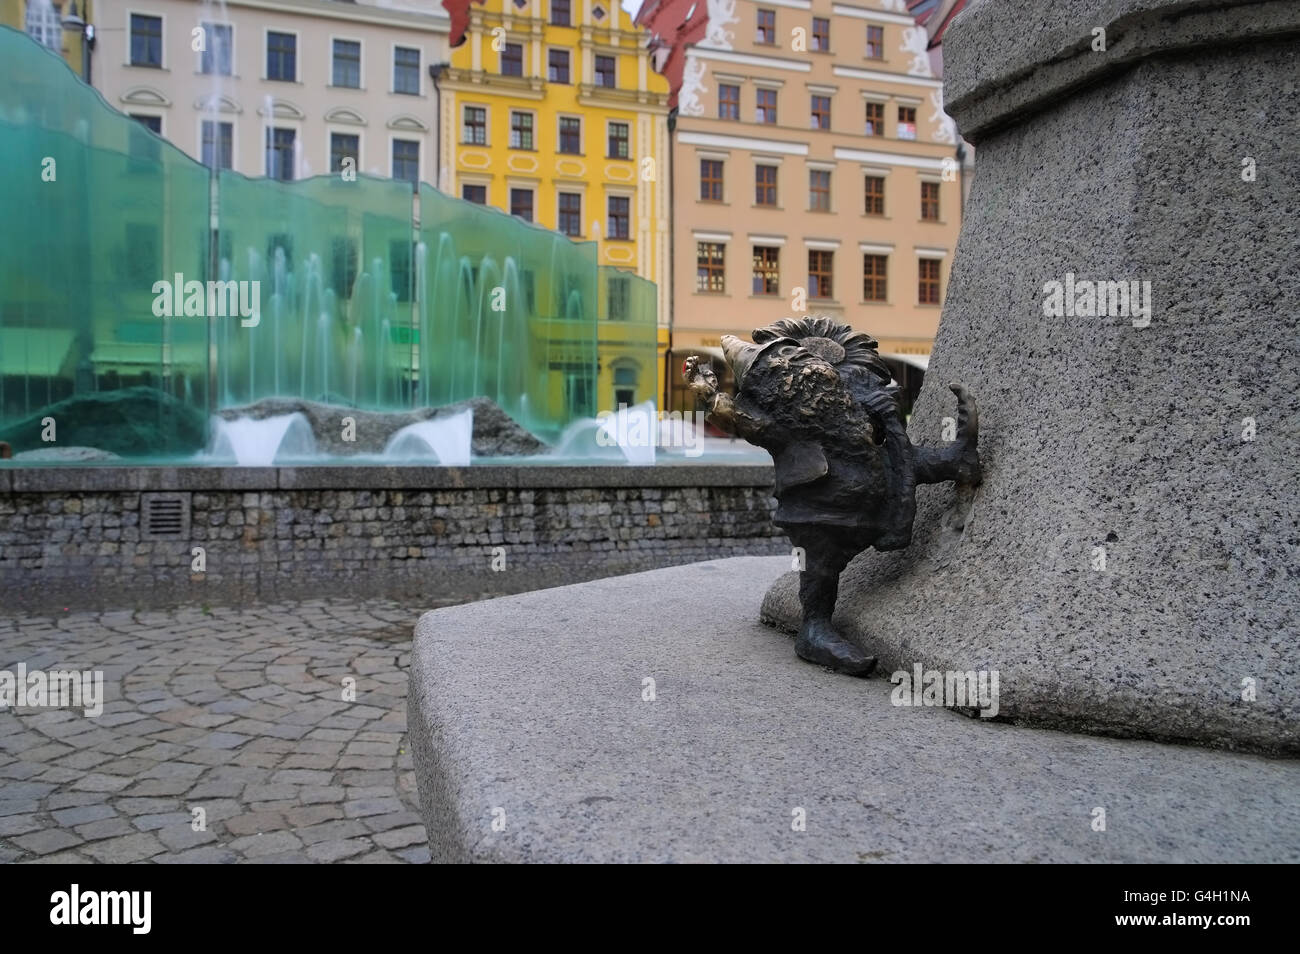 Breslau Zwerg und Springbrunnen in der Stadt - Breslau dwarf and fountain in the city Stock Photo